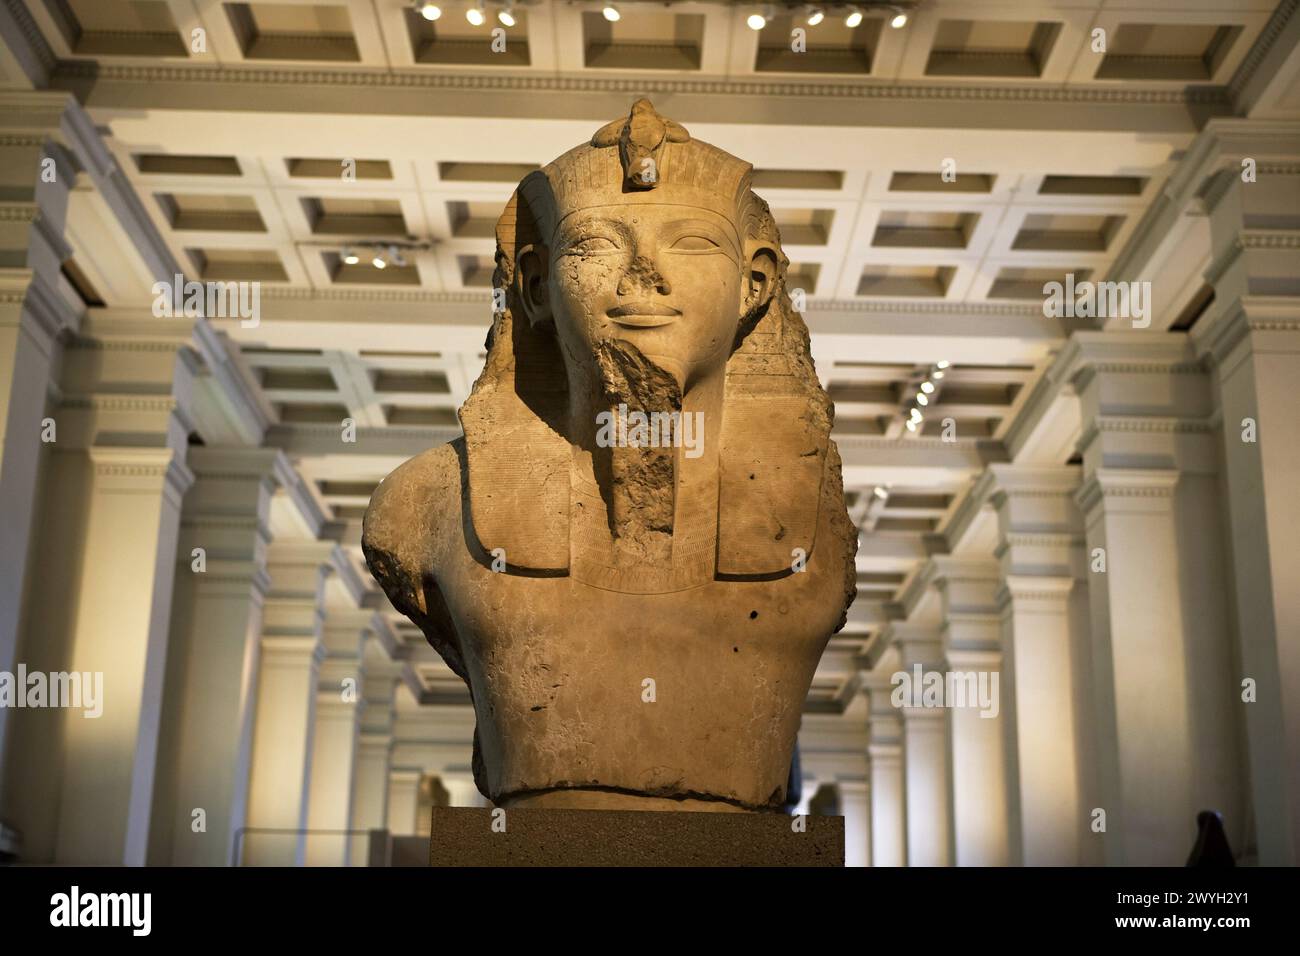 La sculpture égyptienne, le British Museum, Londres. L'Angleterre. UK. Banque D'Images